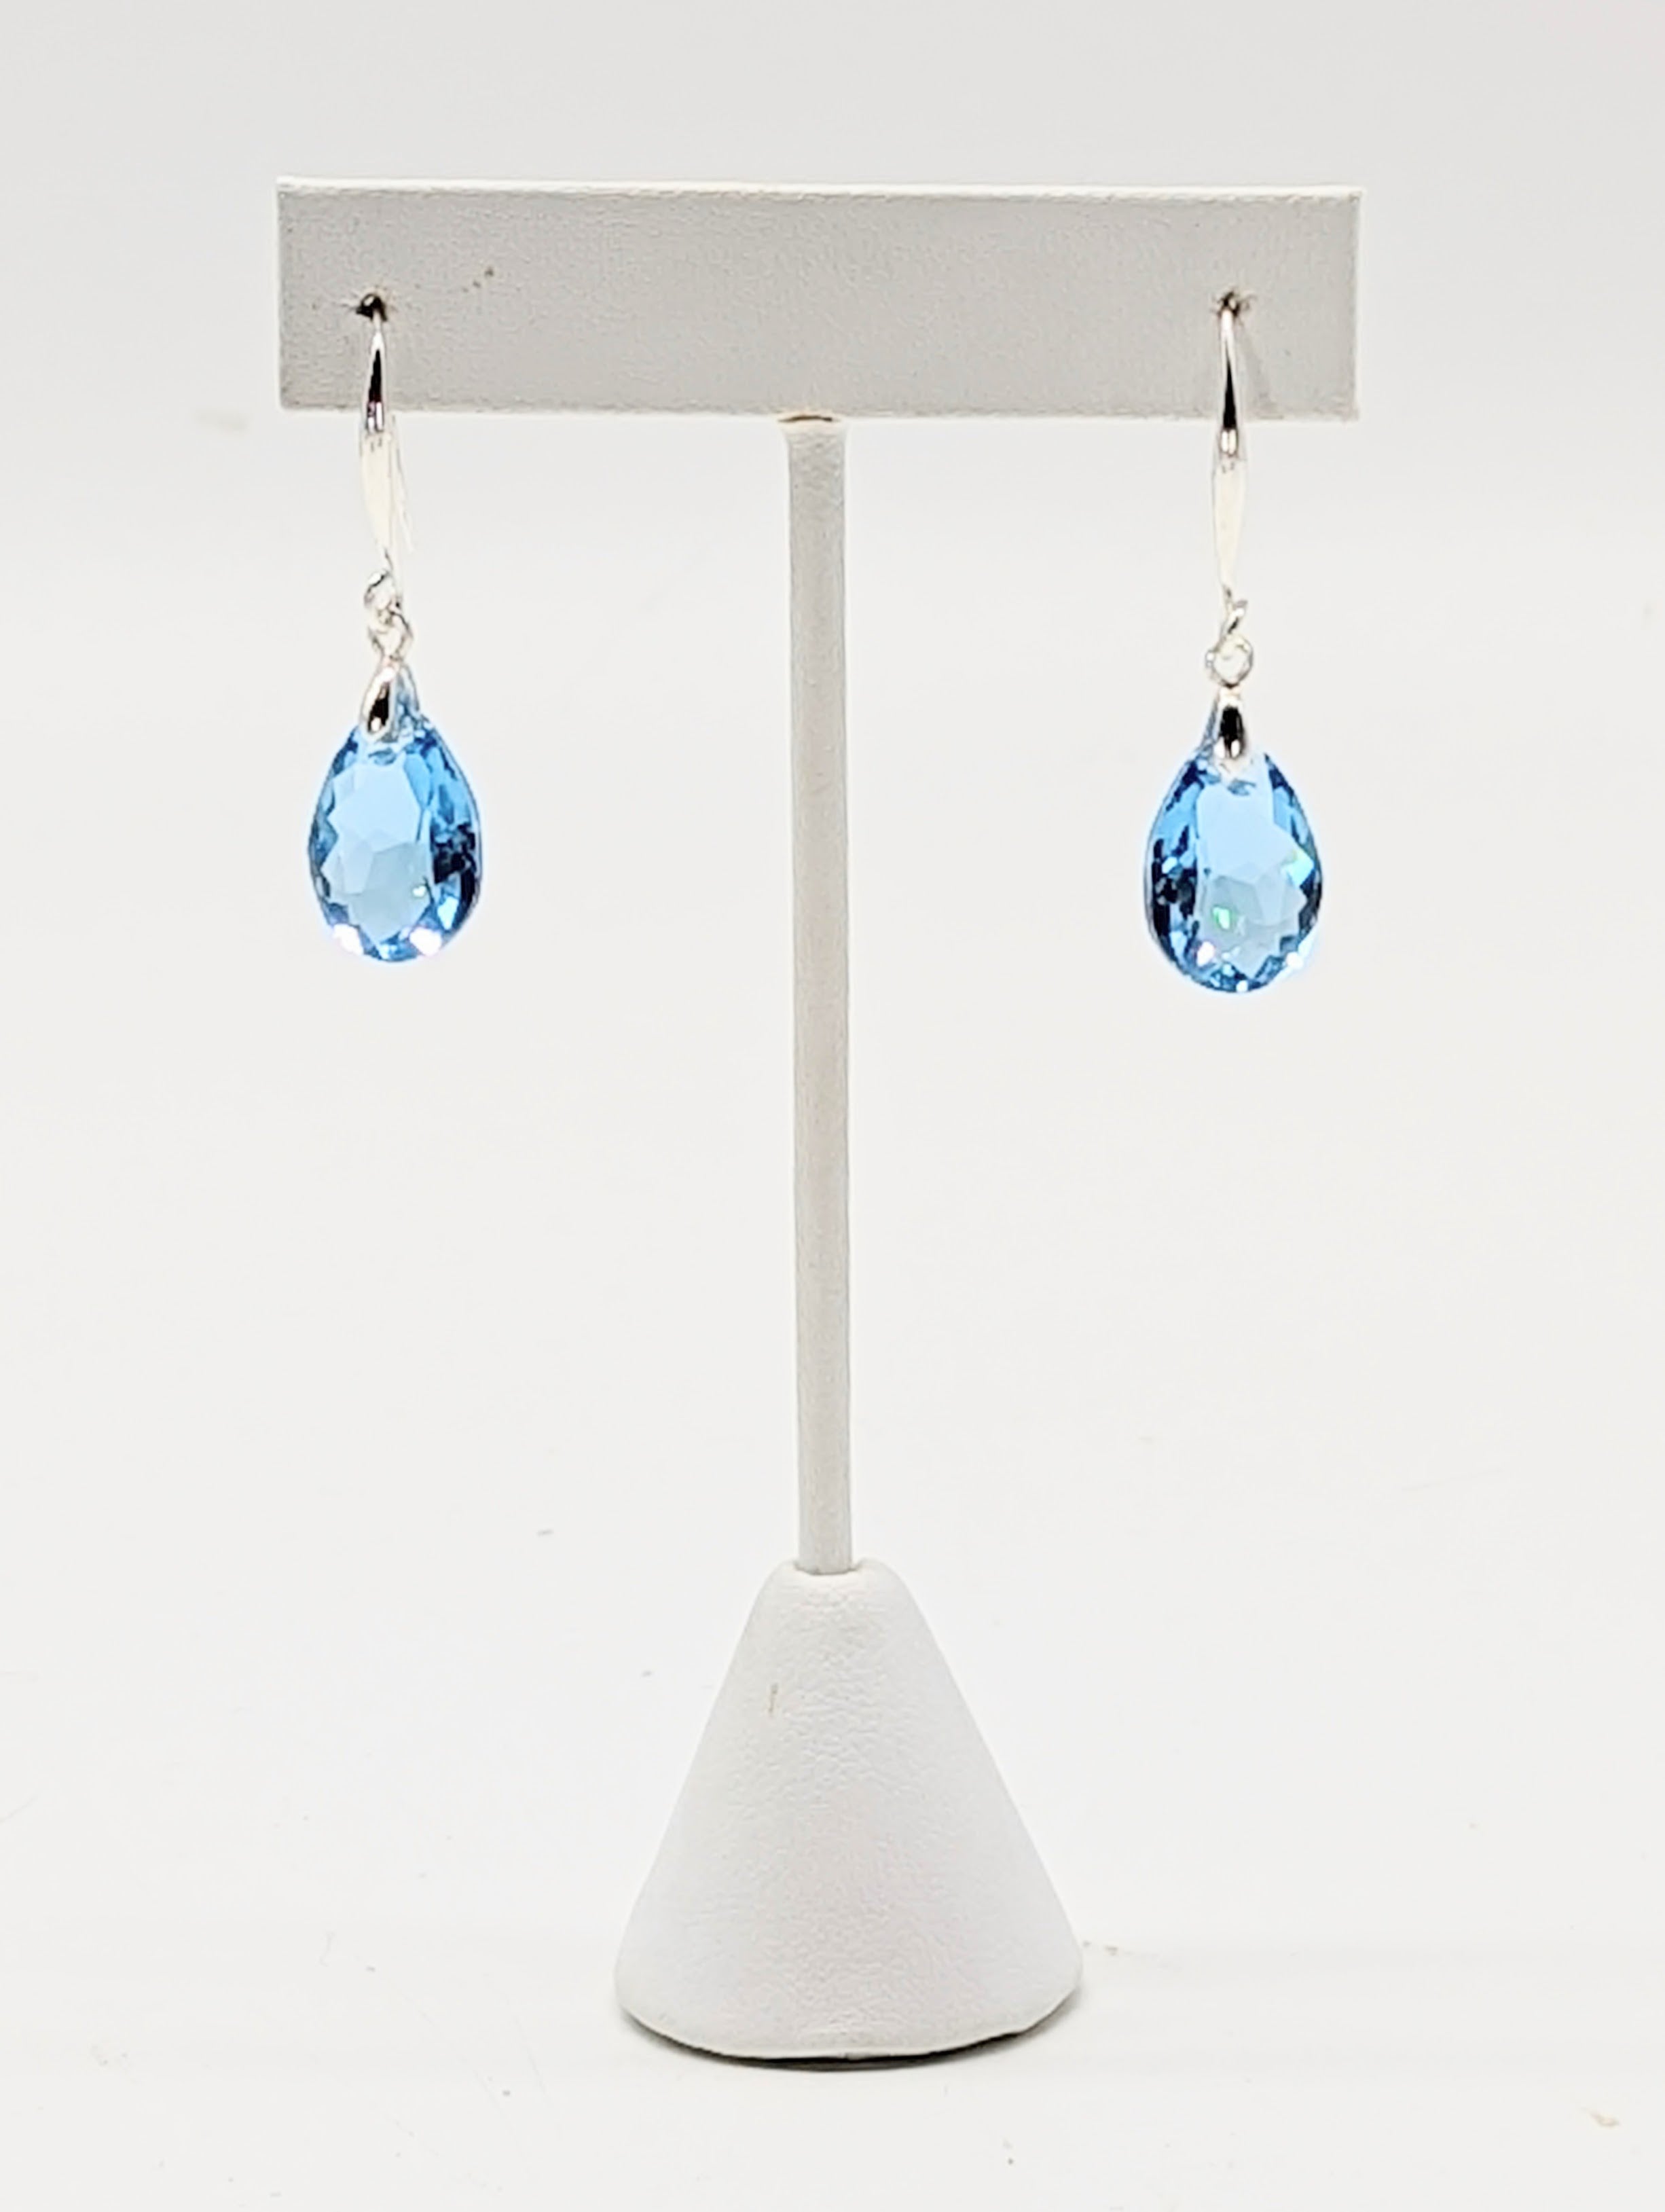 "Sapphire" Austrian Crystal Earrings on Sterling Silver